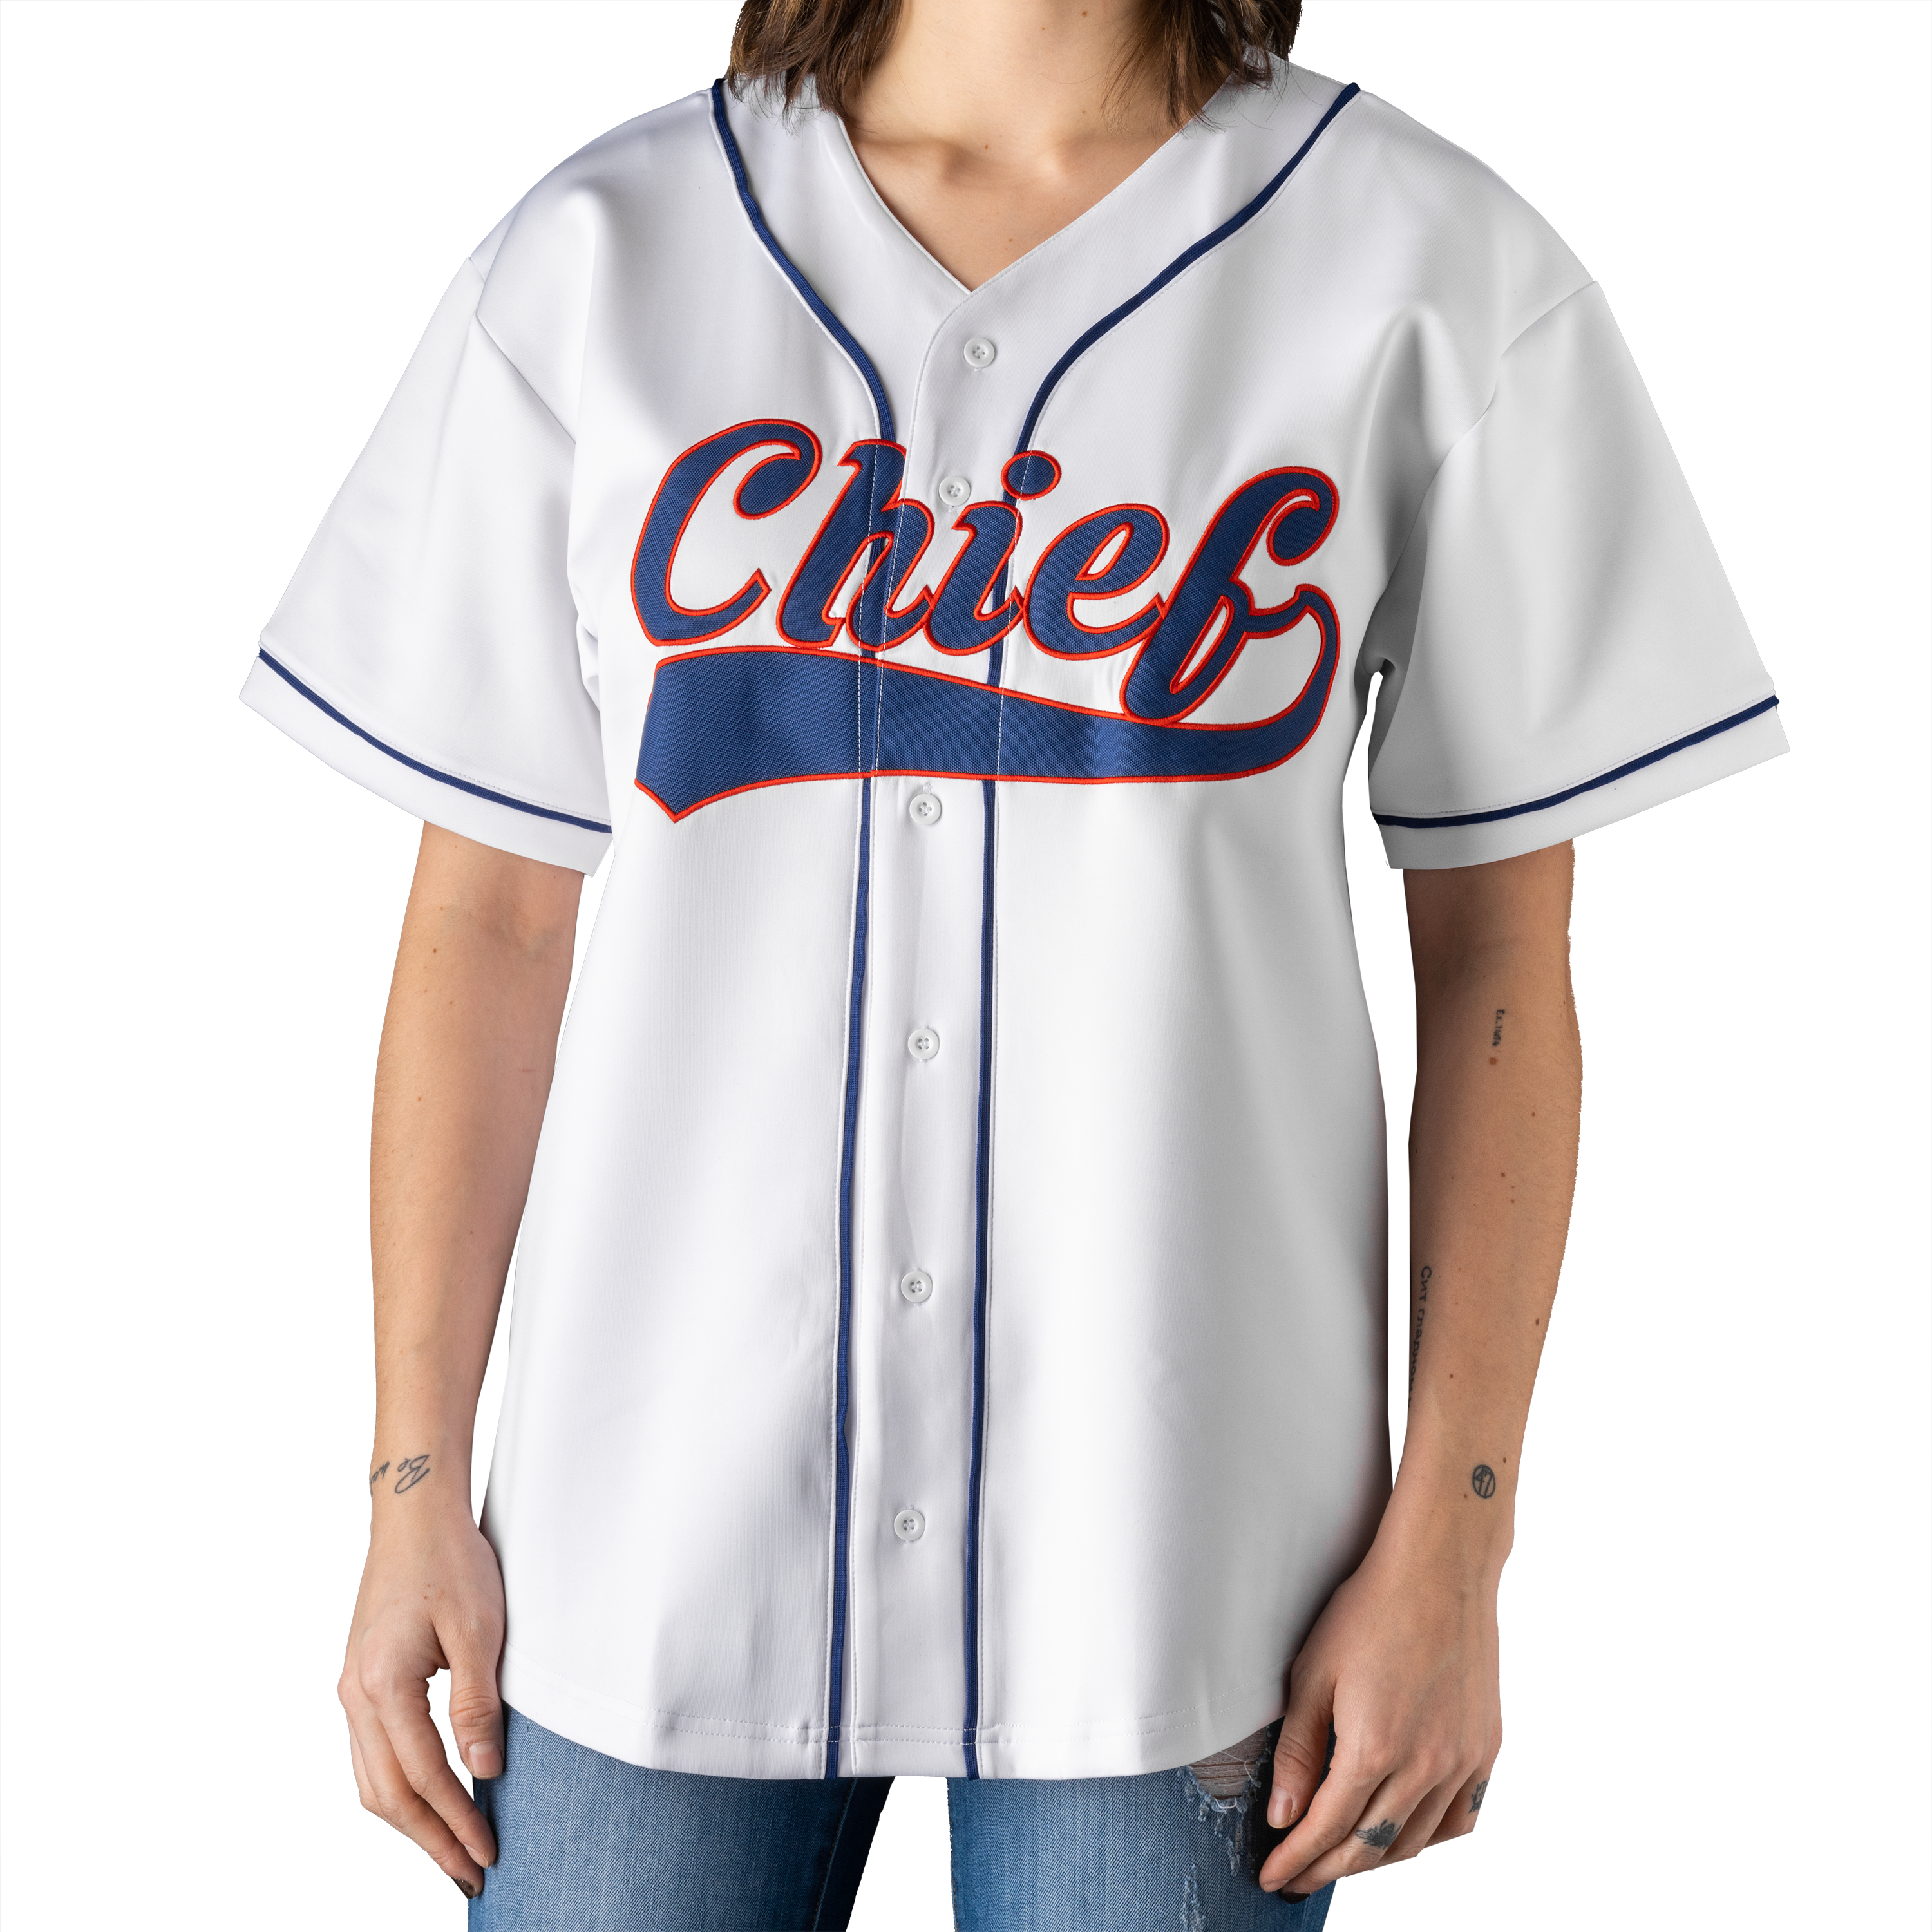 Chief 10 Year Anniversary Jersey – Chief Merchandise